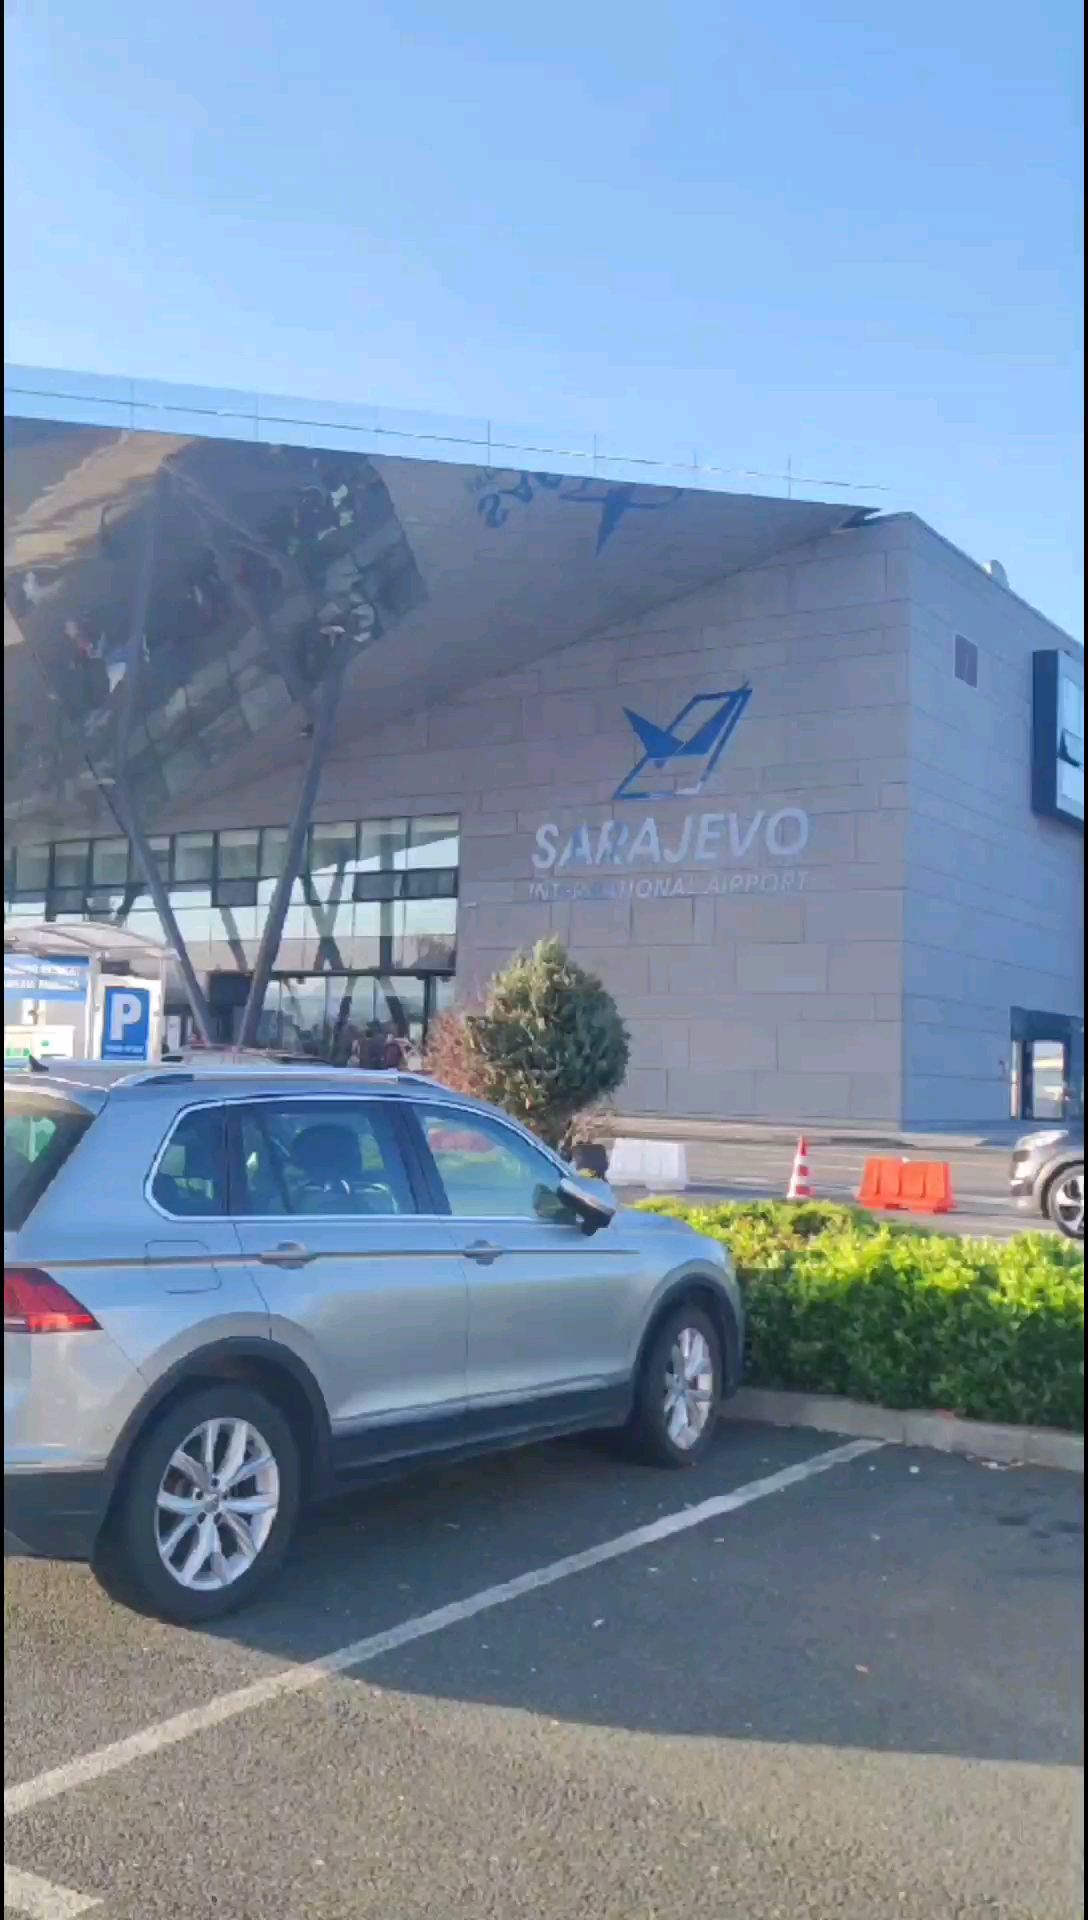 塞尔维亚的机场很小但整洁